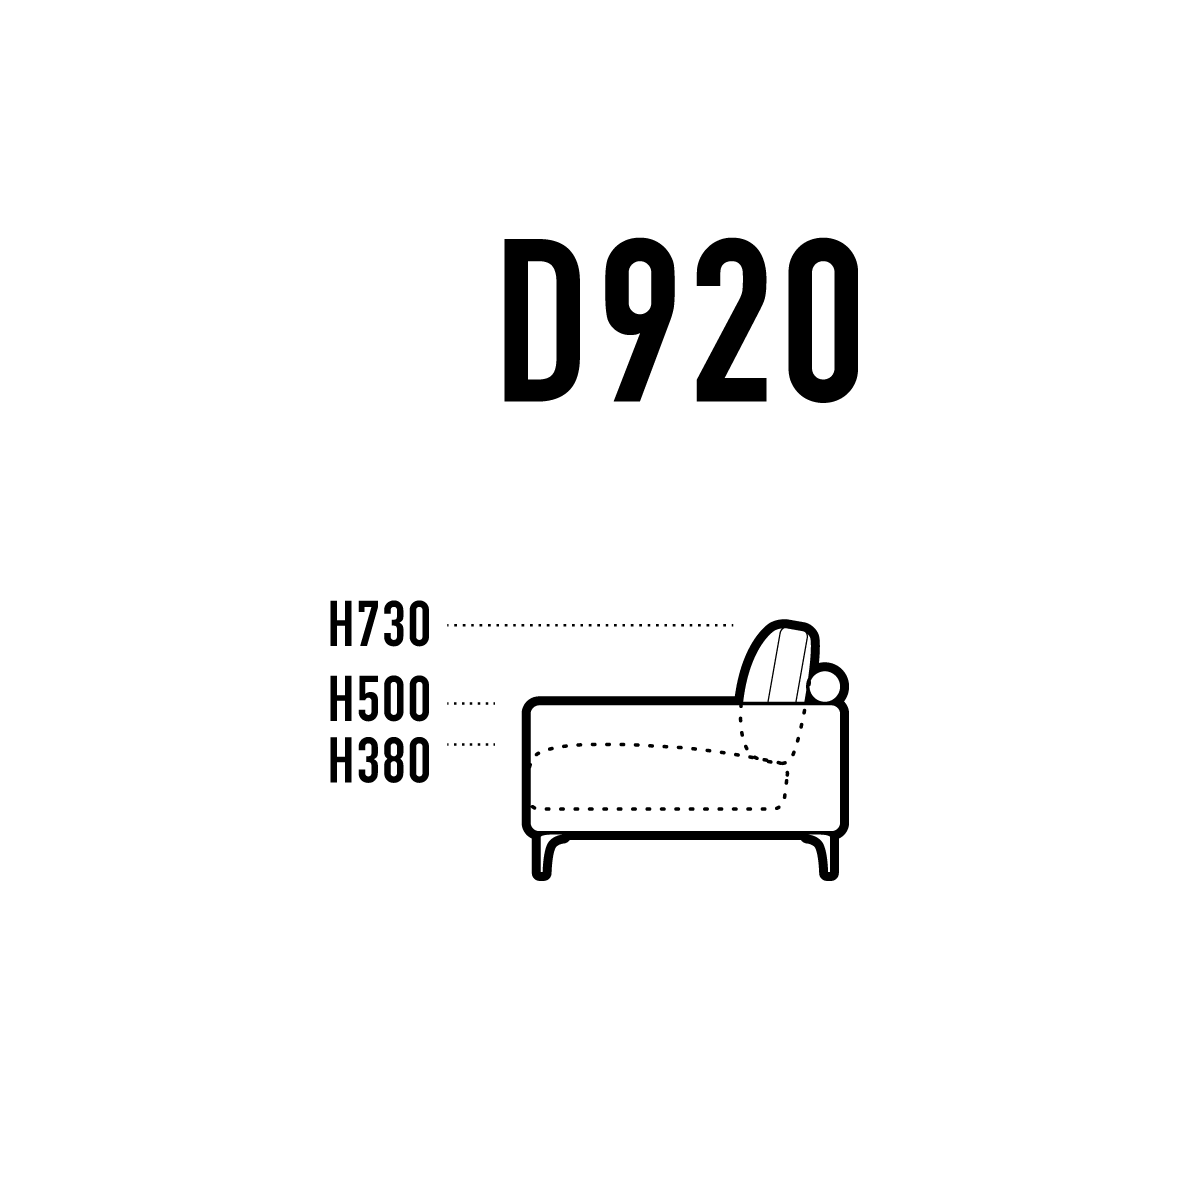 ロー ディープ Pj Sofa 国産ソファ専門店 匠ソファ 感動する座り心地を追求 東京青山 京都 通販